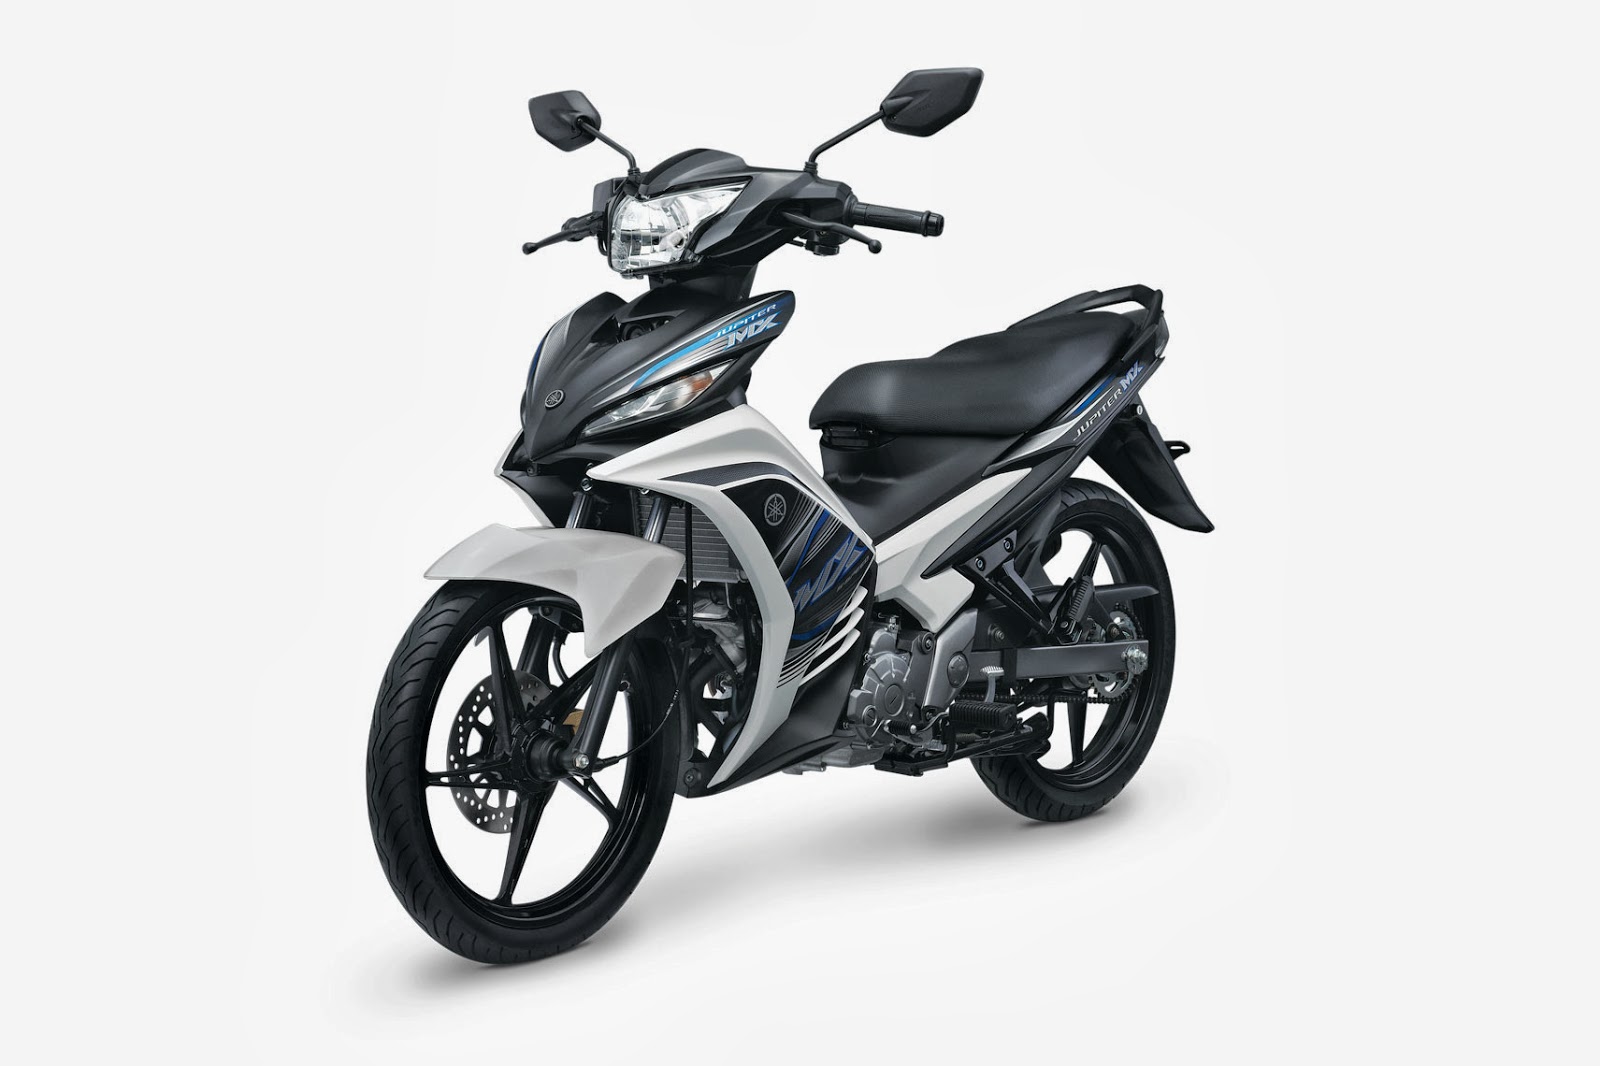 Spesifikasi Yamaha New Jupiter MX 2013 Review Dan Harga Terbaru